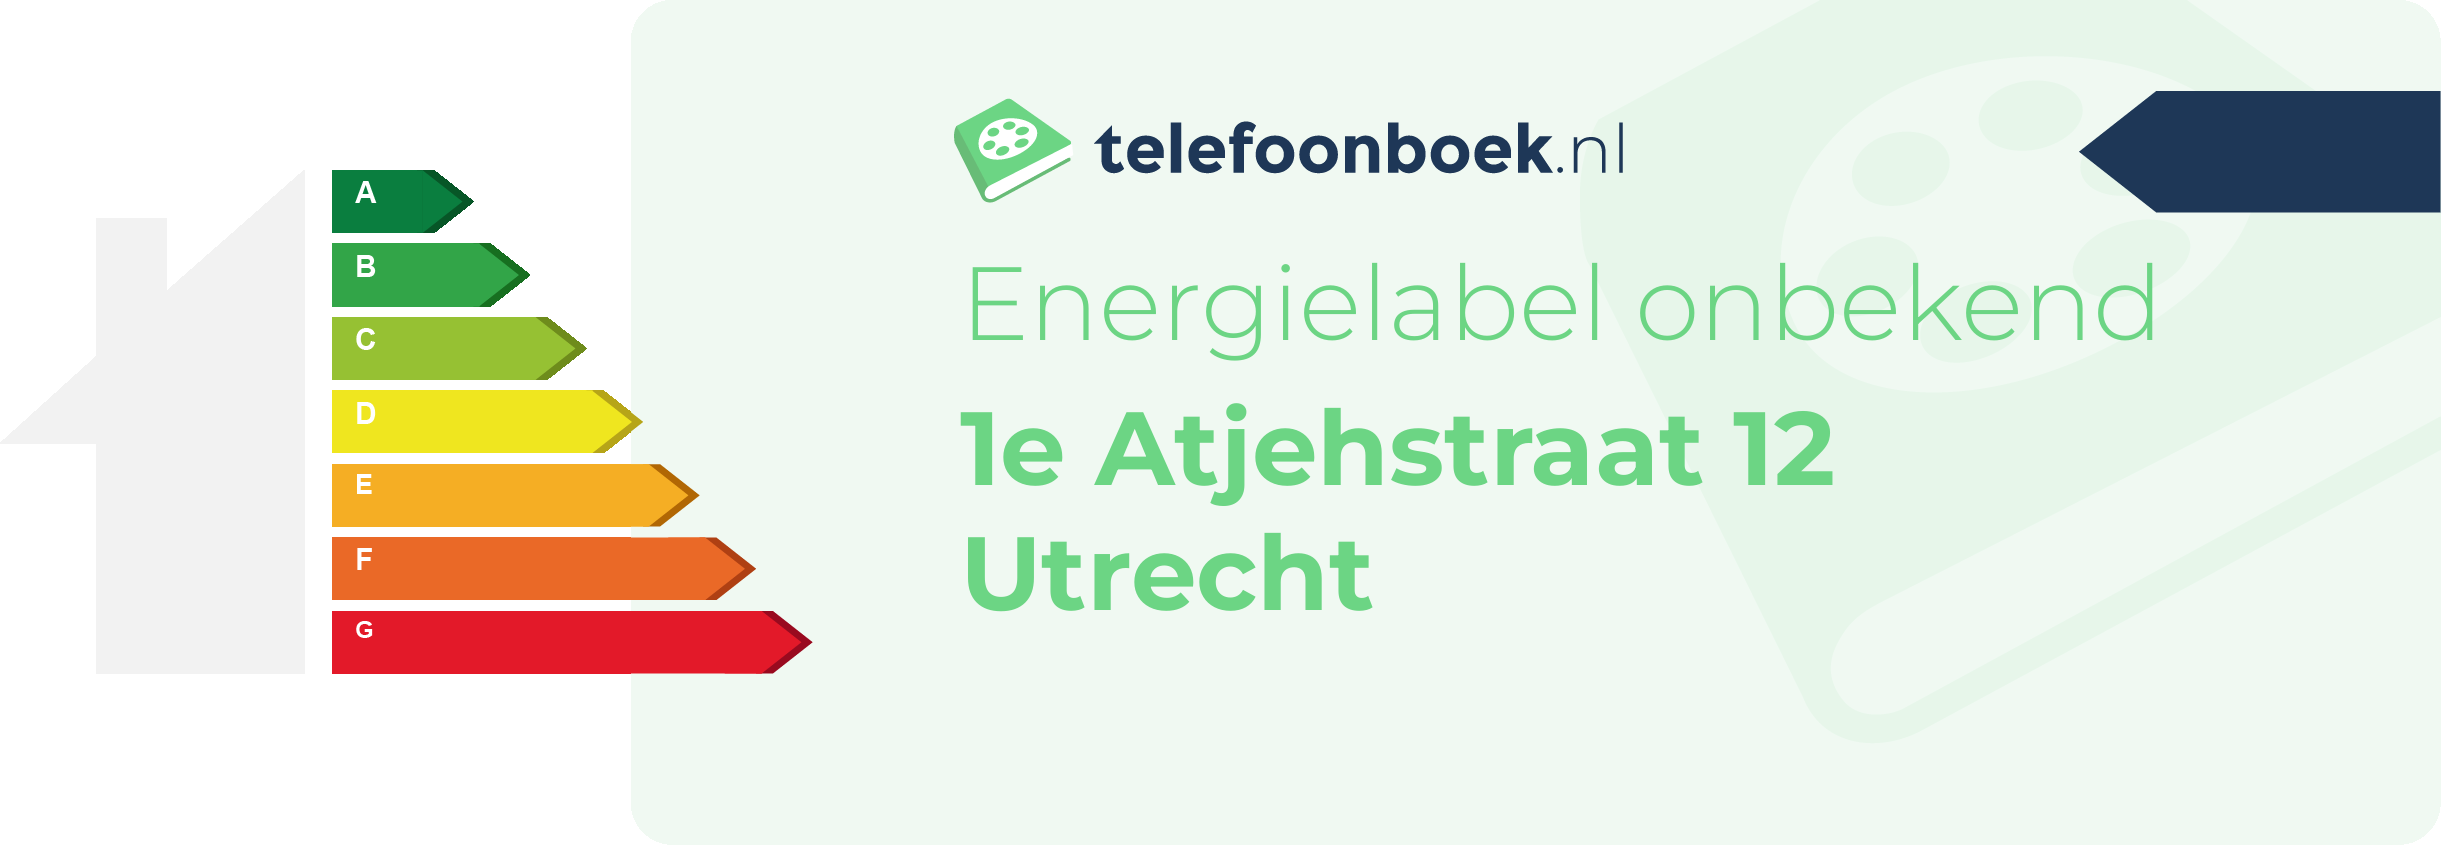 Energielabel 1e Atjehstraat 12 Utrecht